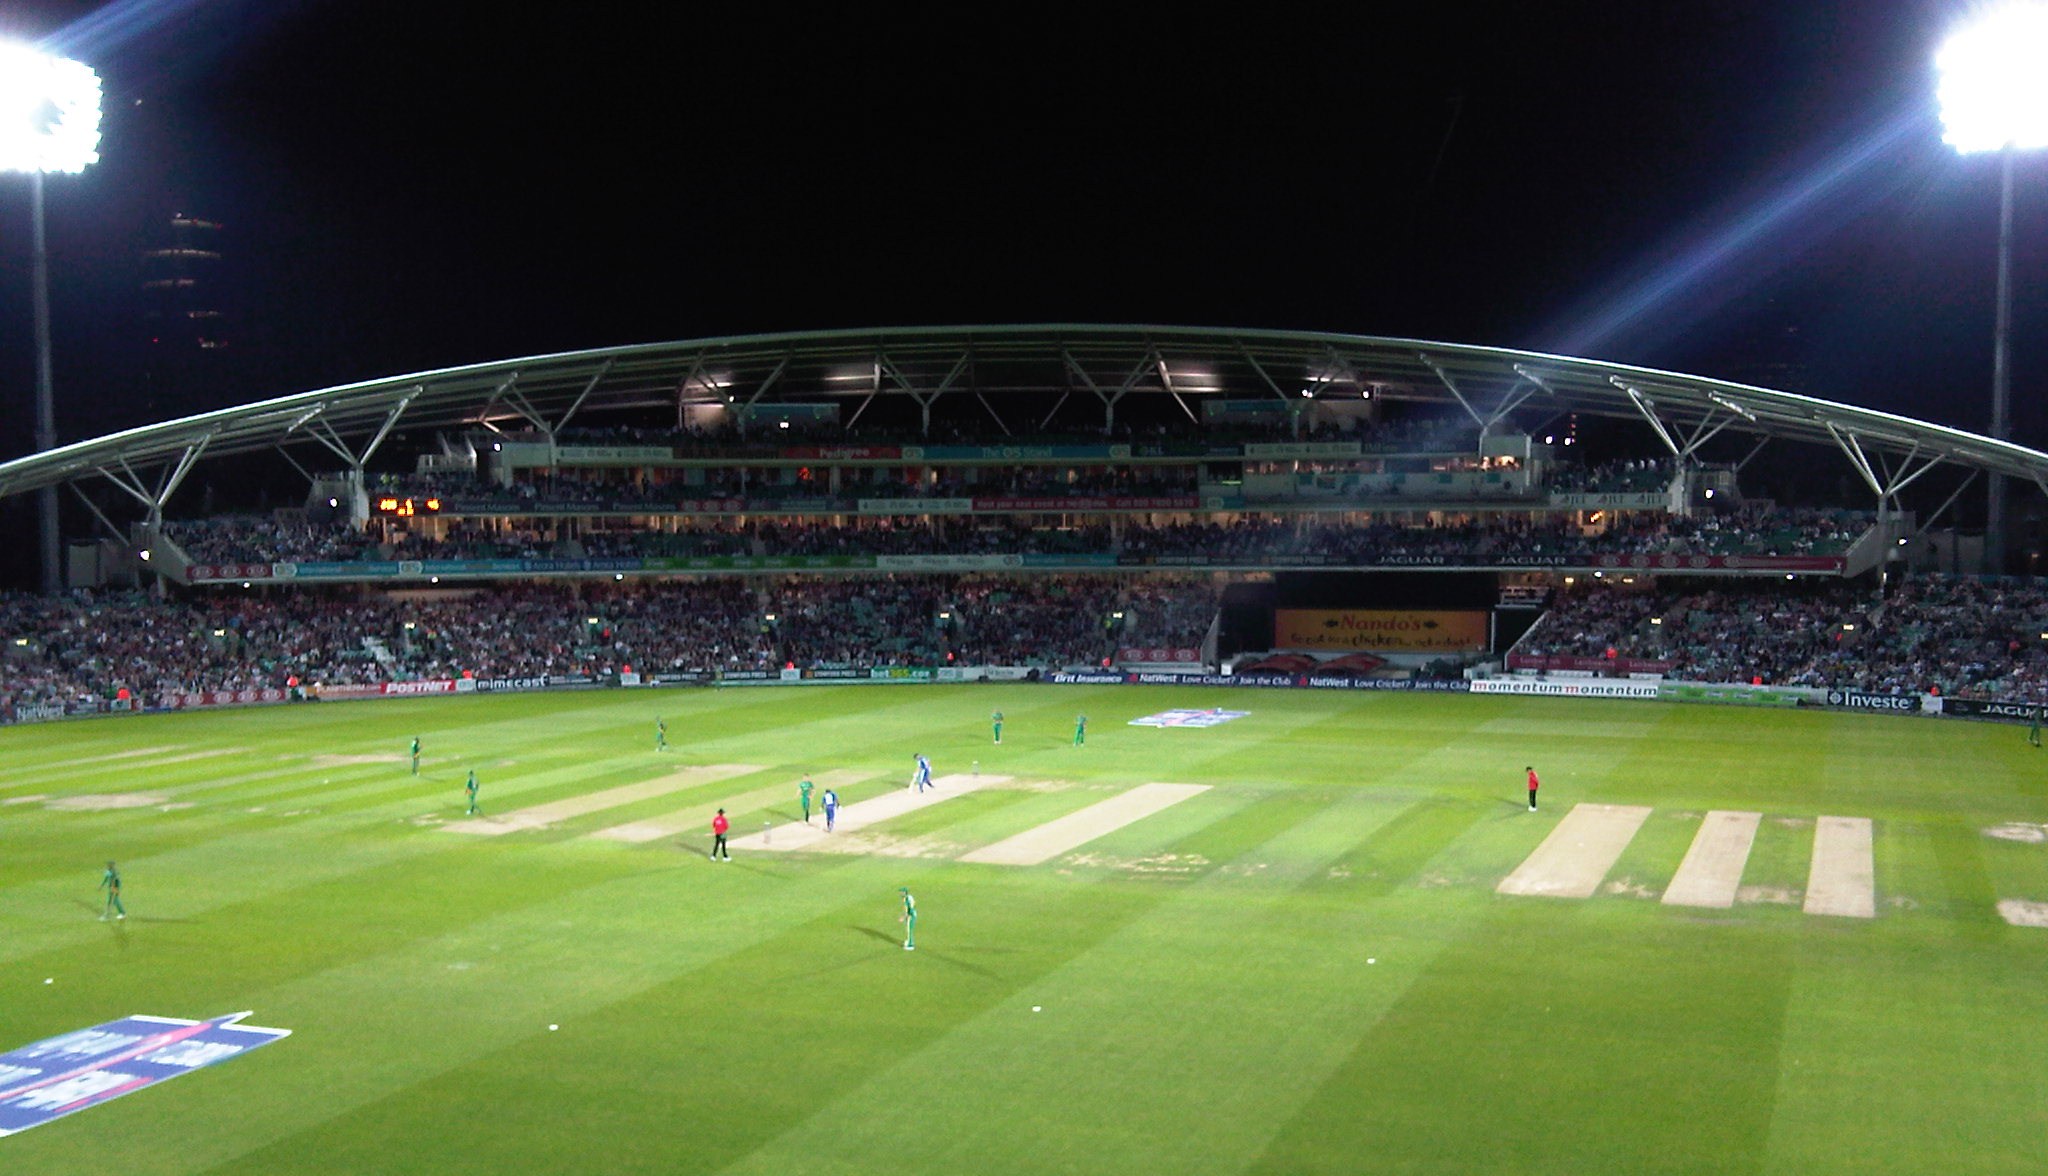 Matched field. Cricket Stadium. Стадион крикет поле. Поле для крикета. Ворота для крикета.